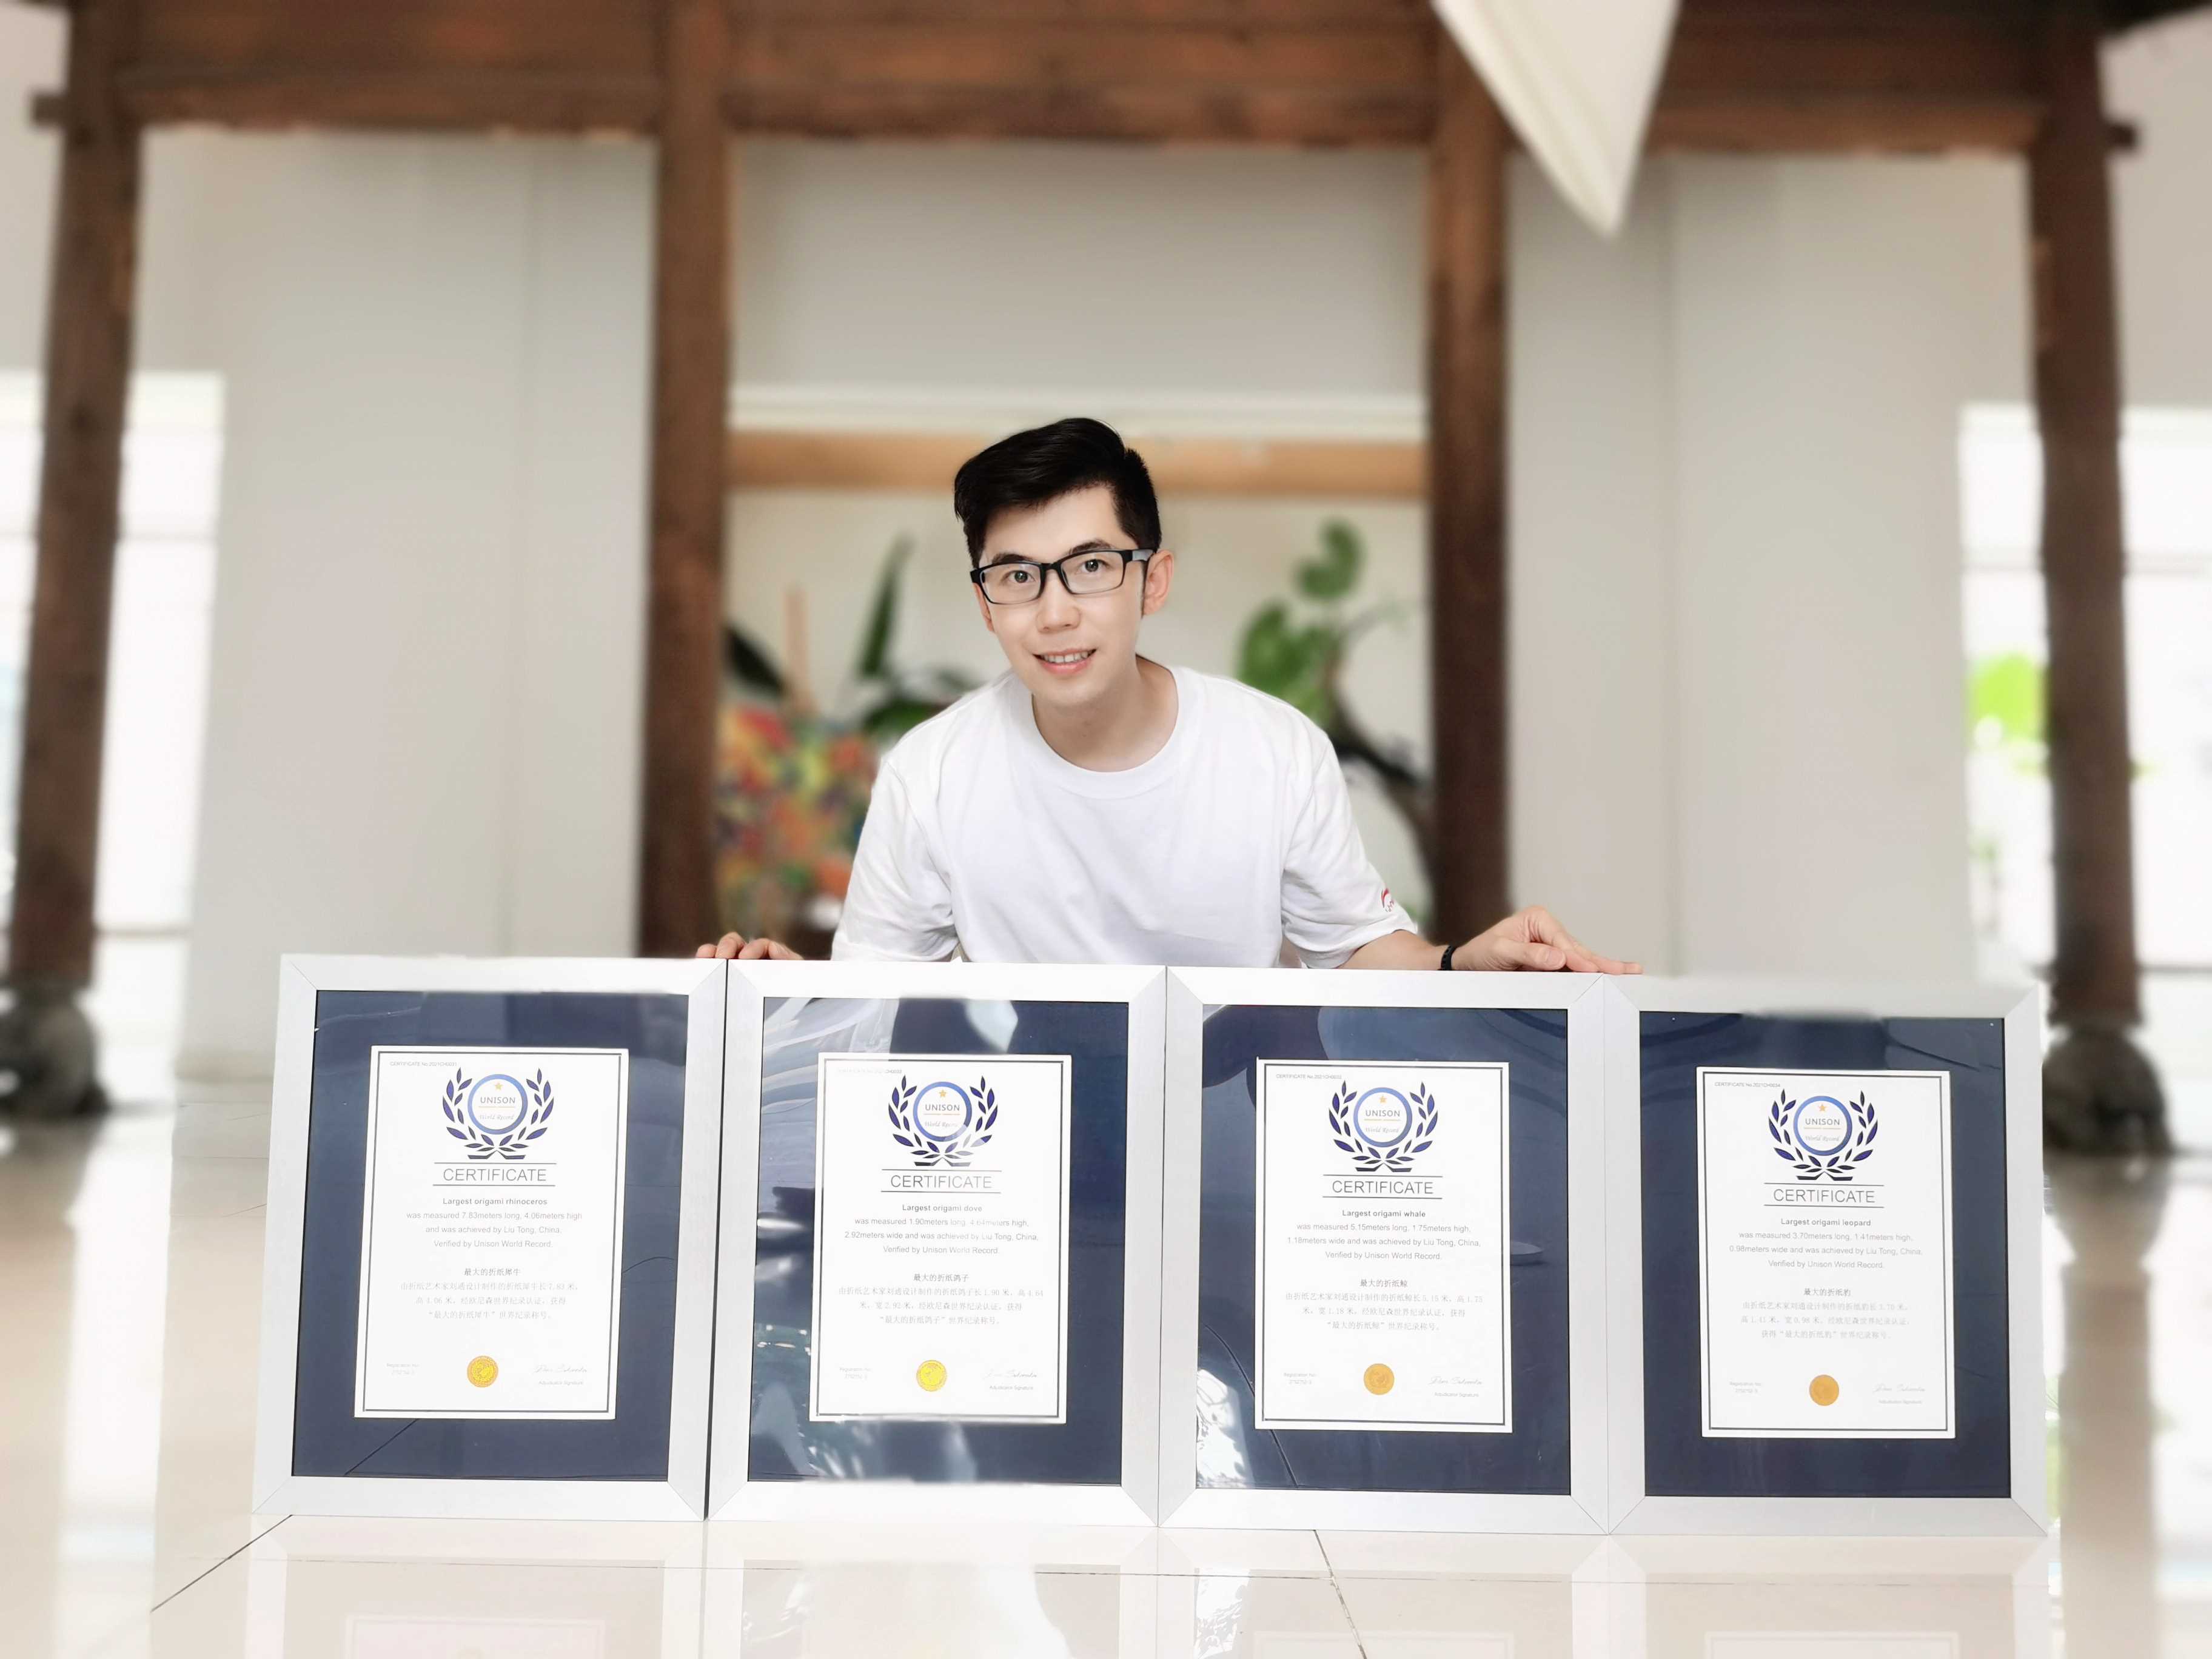 中国青年折纸艺术家刘通四项折纸作品获欧尼森世界纪录认证-欧尼森世界